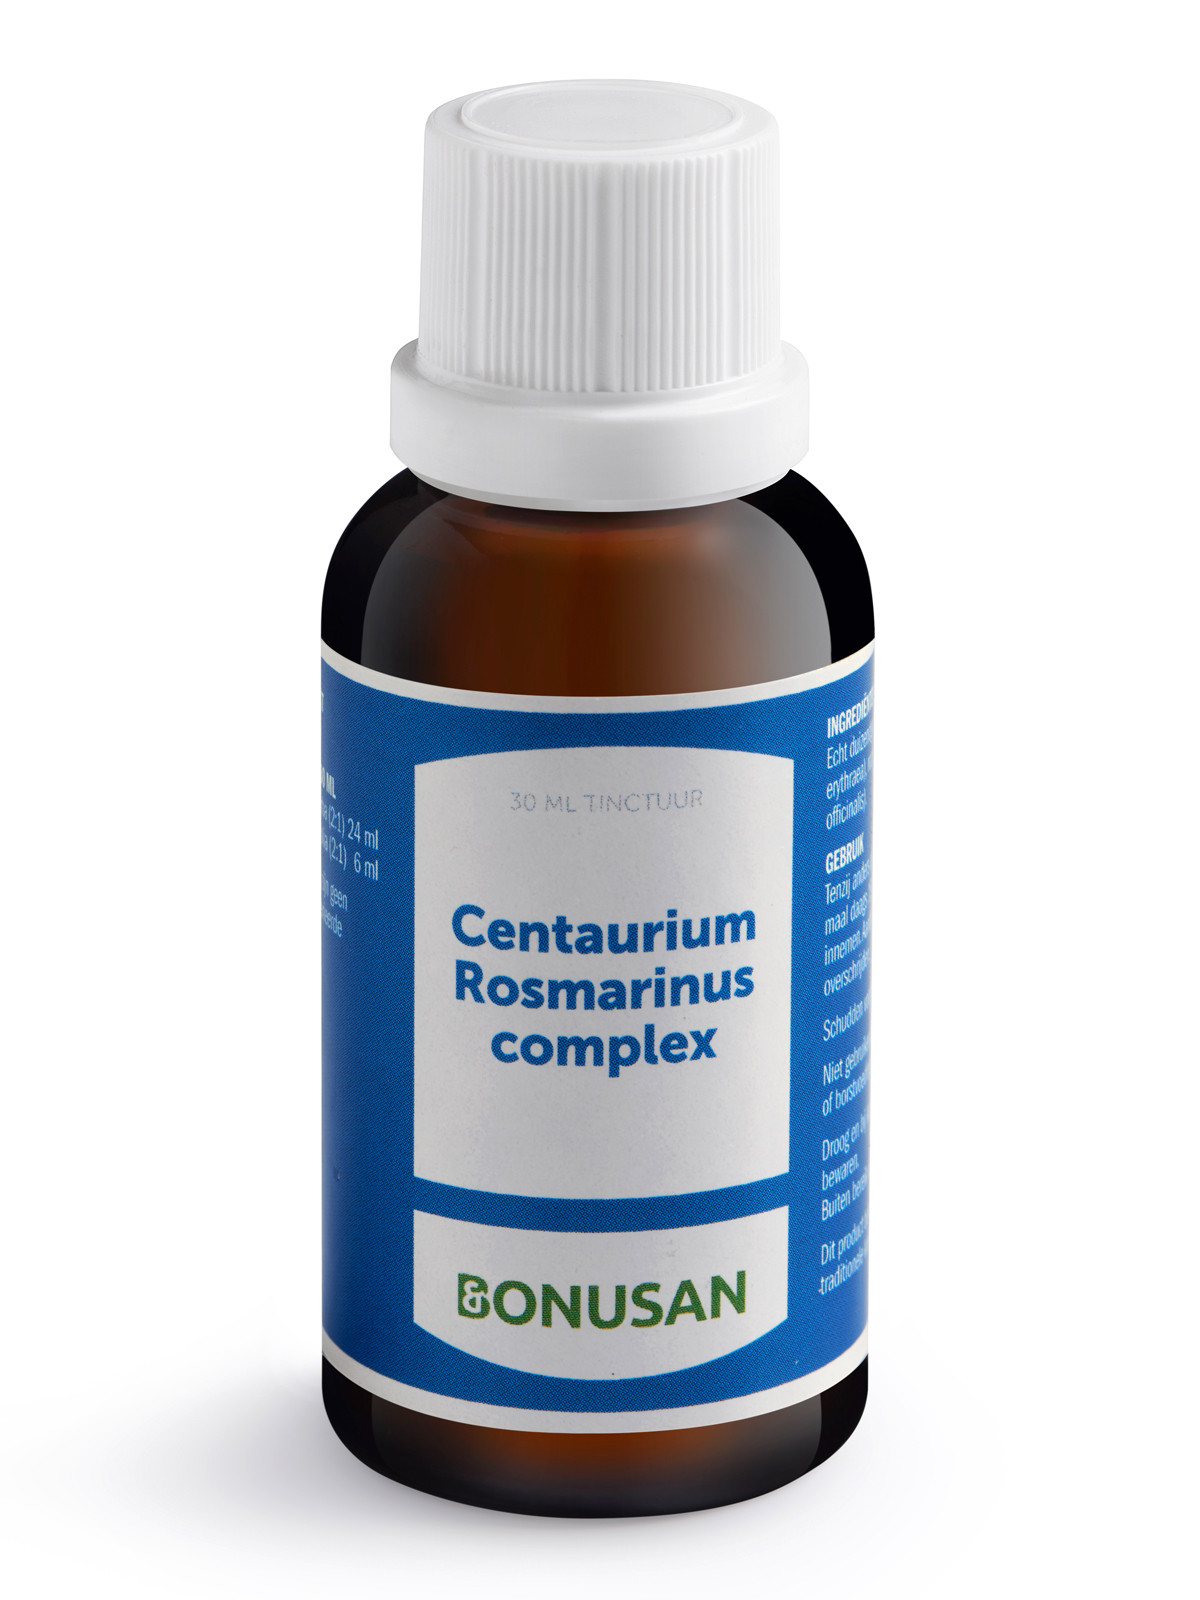 Bonusan - Centaurium rosmarinus complex tinctuur